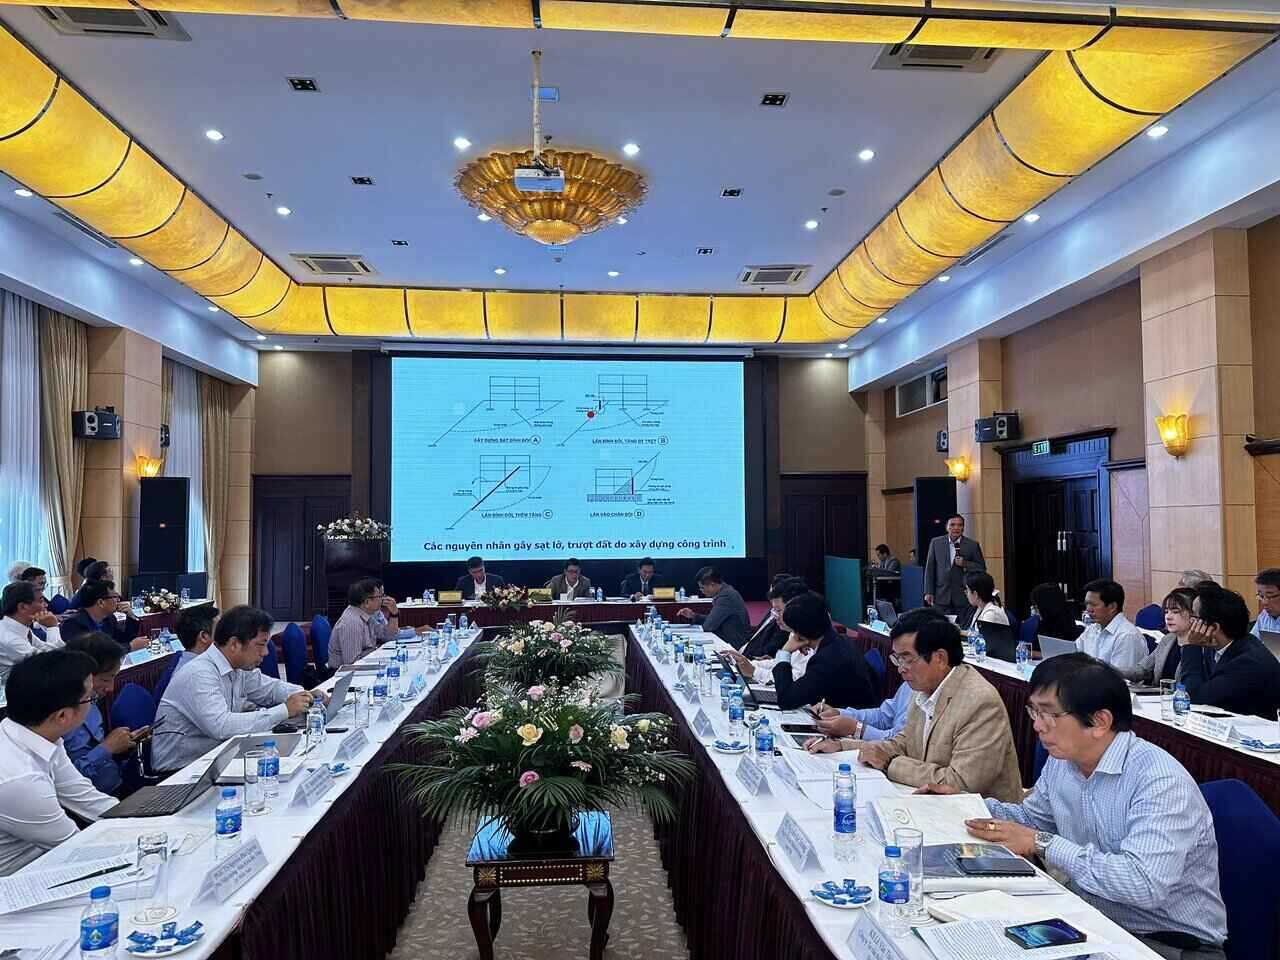  Hội thảo “Đánh giá thực trạng, nguyên nhân và giải pháp phòng, chống sạt trượt, ngập lụt cục bộ trên địa bàn tỉnh Lâm Đồng” được tổ chức tại tỉnh Lâm Đồng vào ngày 22.9. Ảnh: Nguyễn Dũng